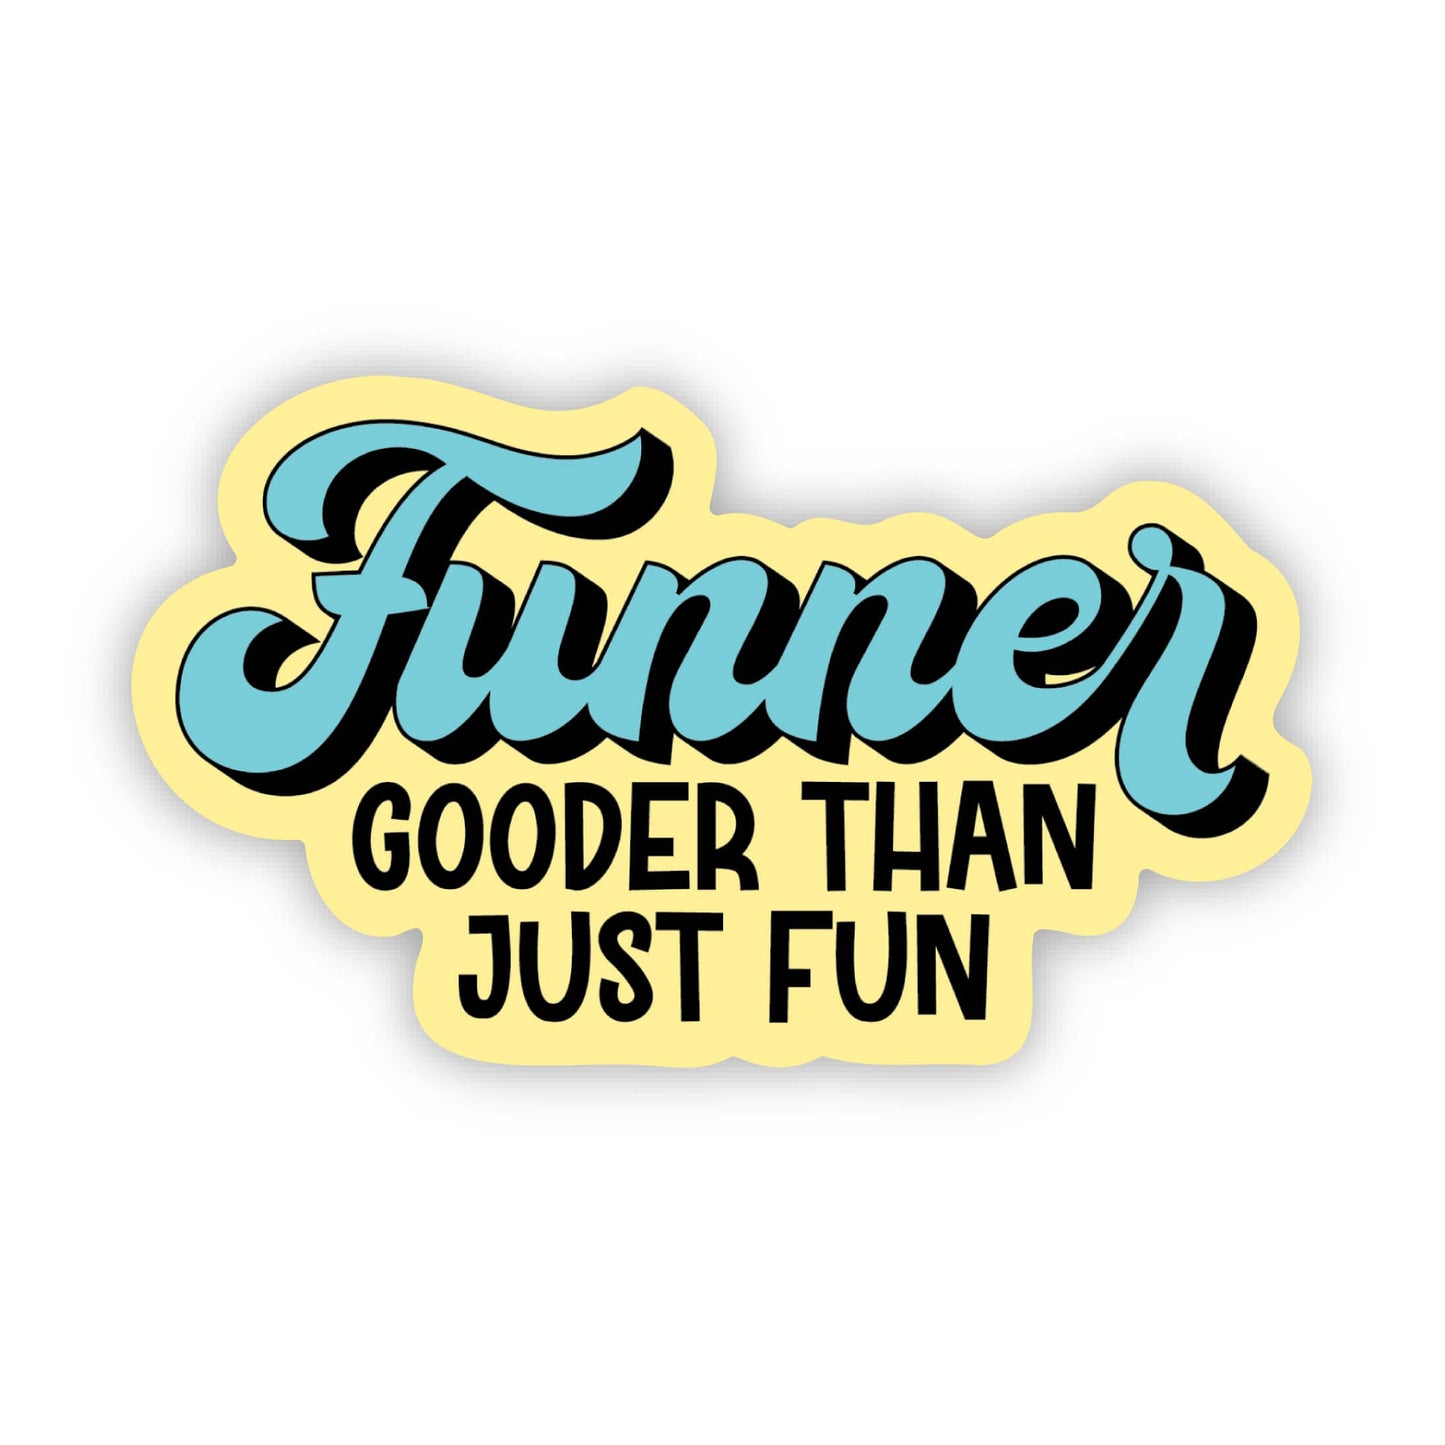 Funner: gooder than just fun Sticker